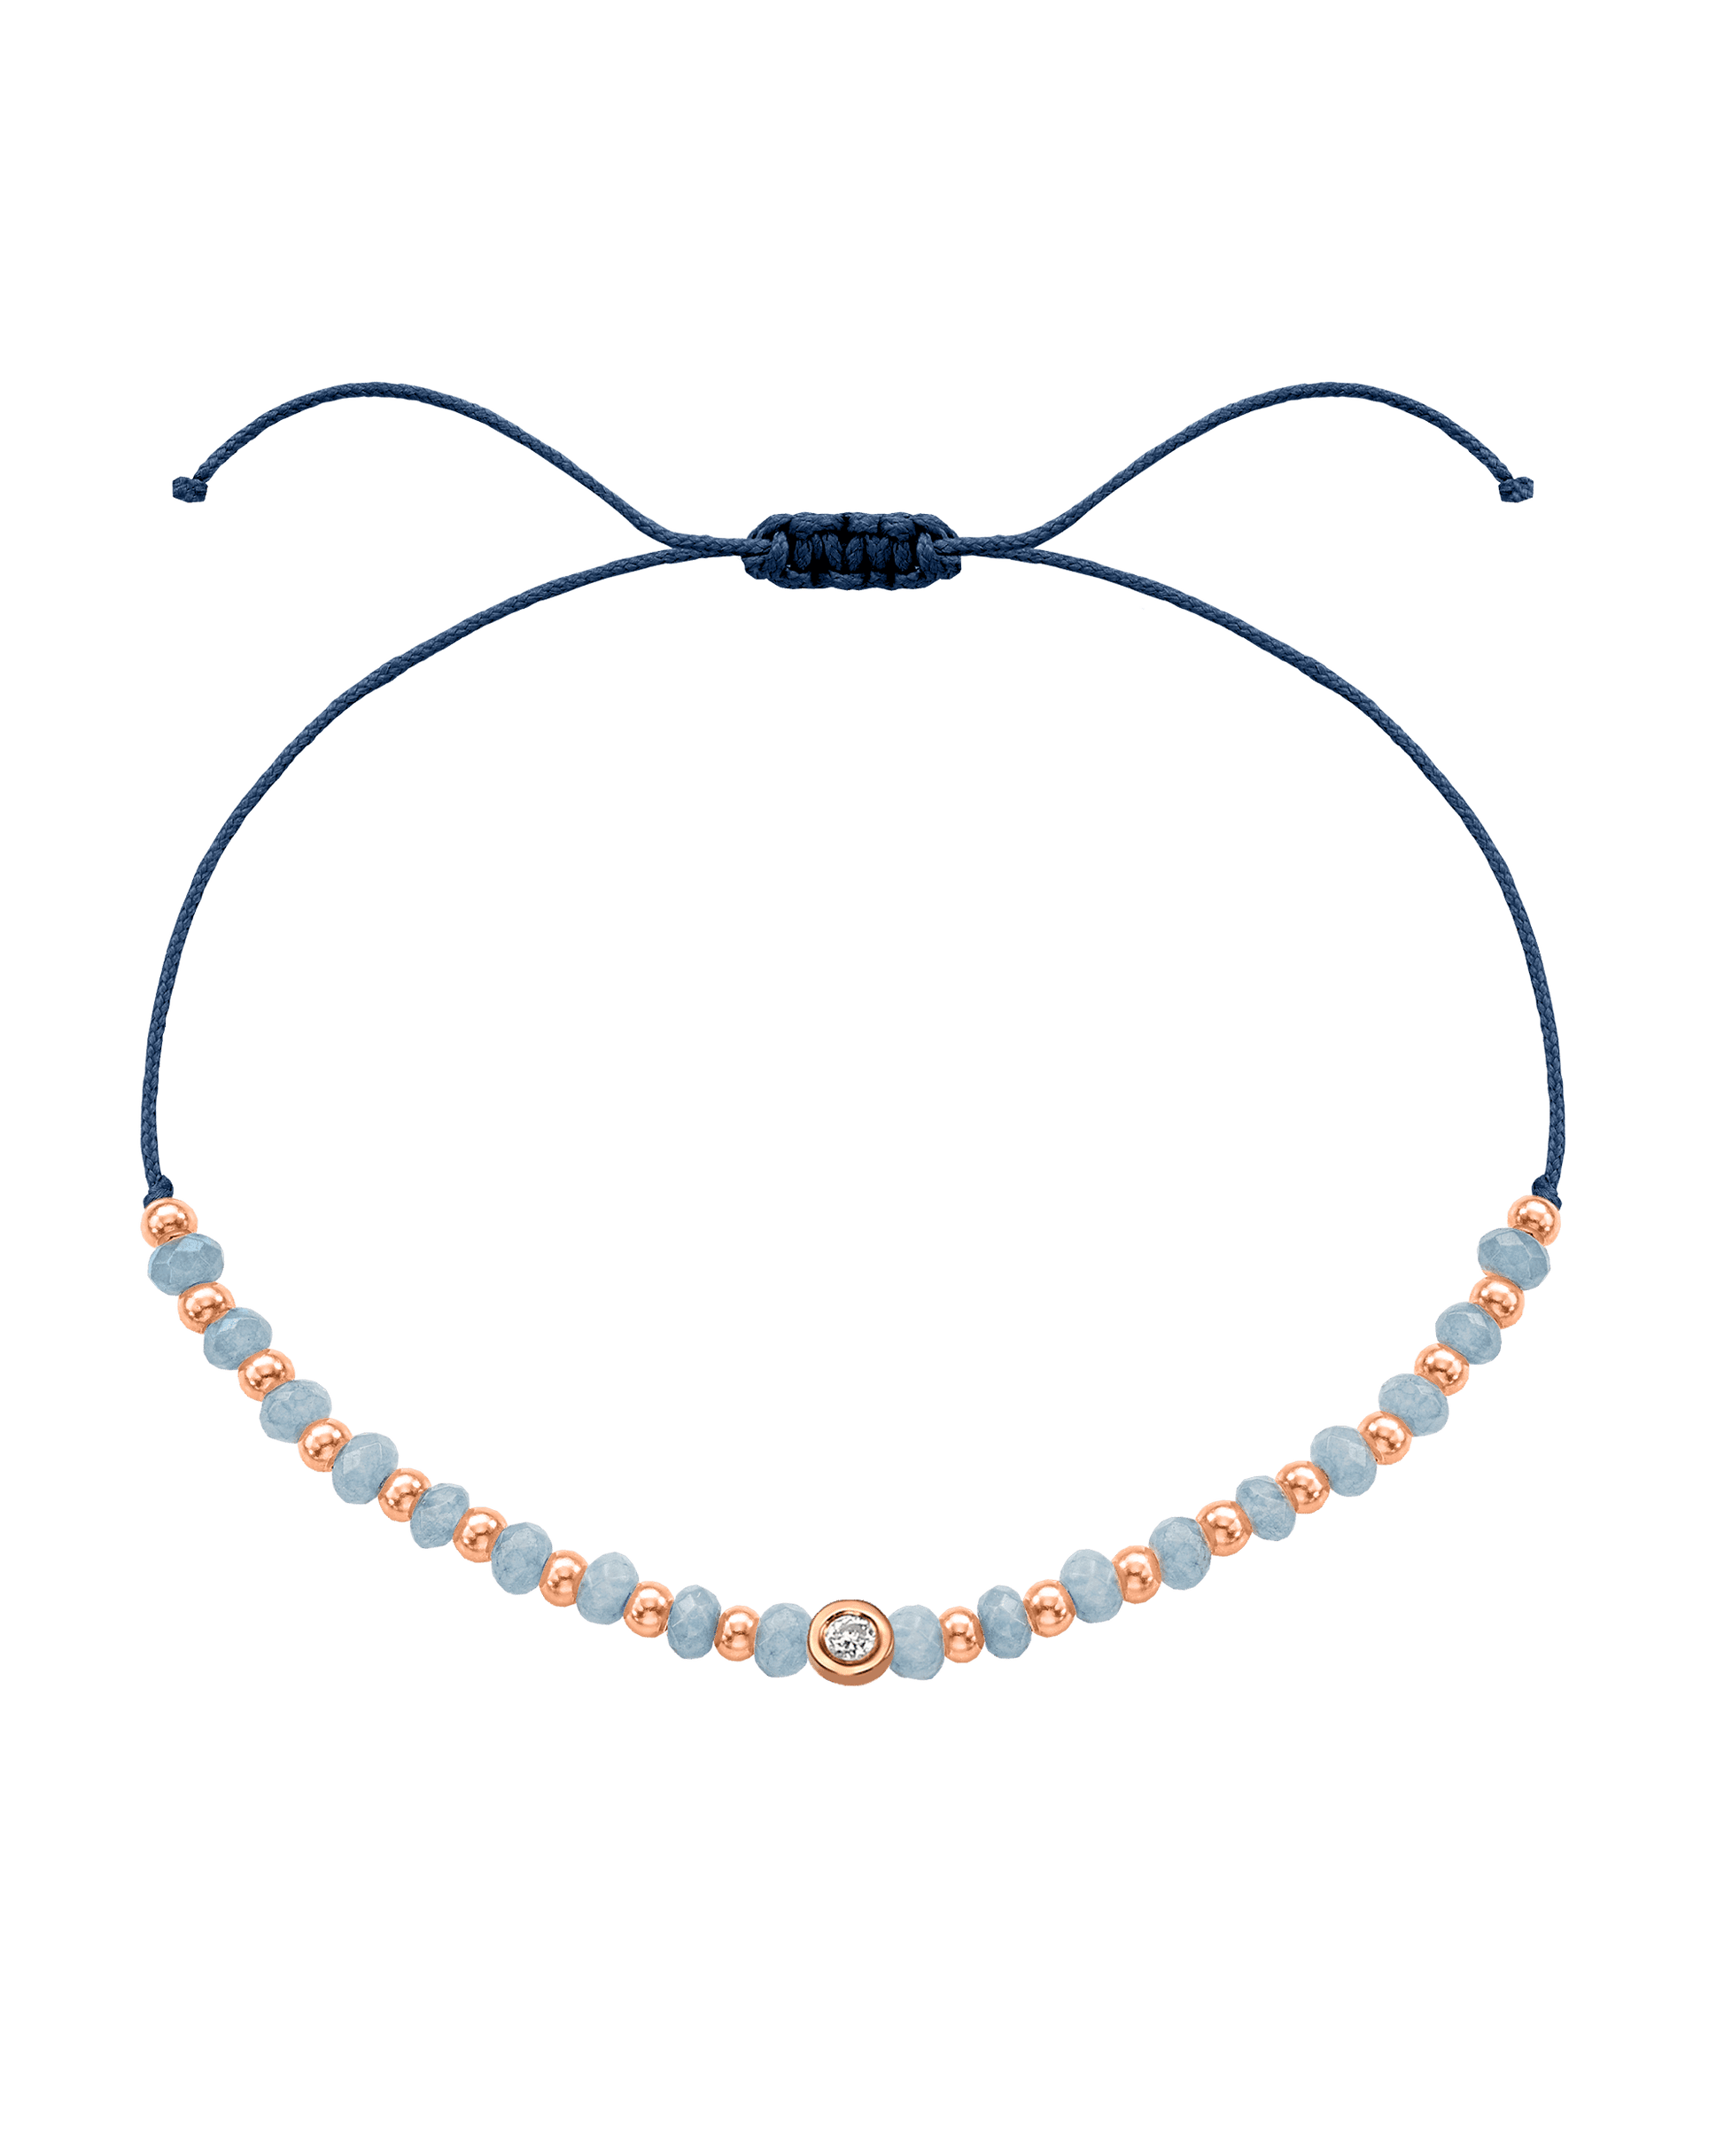 Celestite Gemstone String of Love Bracelet for Mindfulness - 14K Rose Gold Bracelets 14K Solid Gold Indigo Small: 0.03ct 